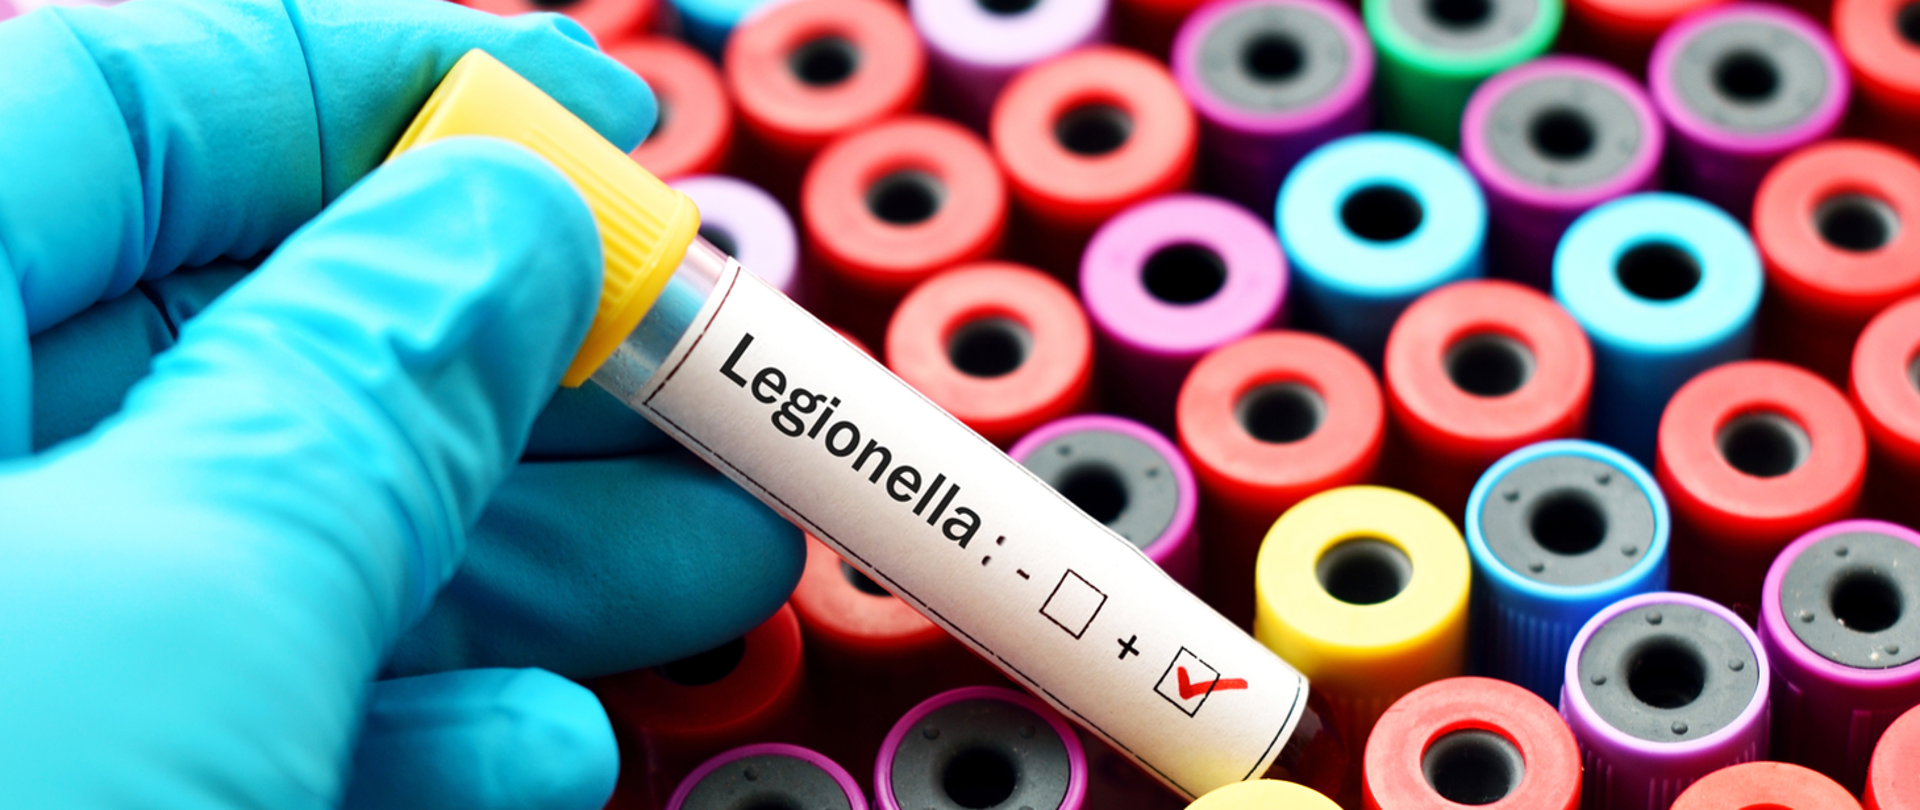 Fiolka z etykietą - Legionella: +. W tle kilkadziesiąt podobnych.